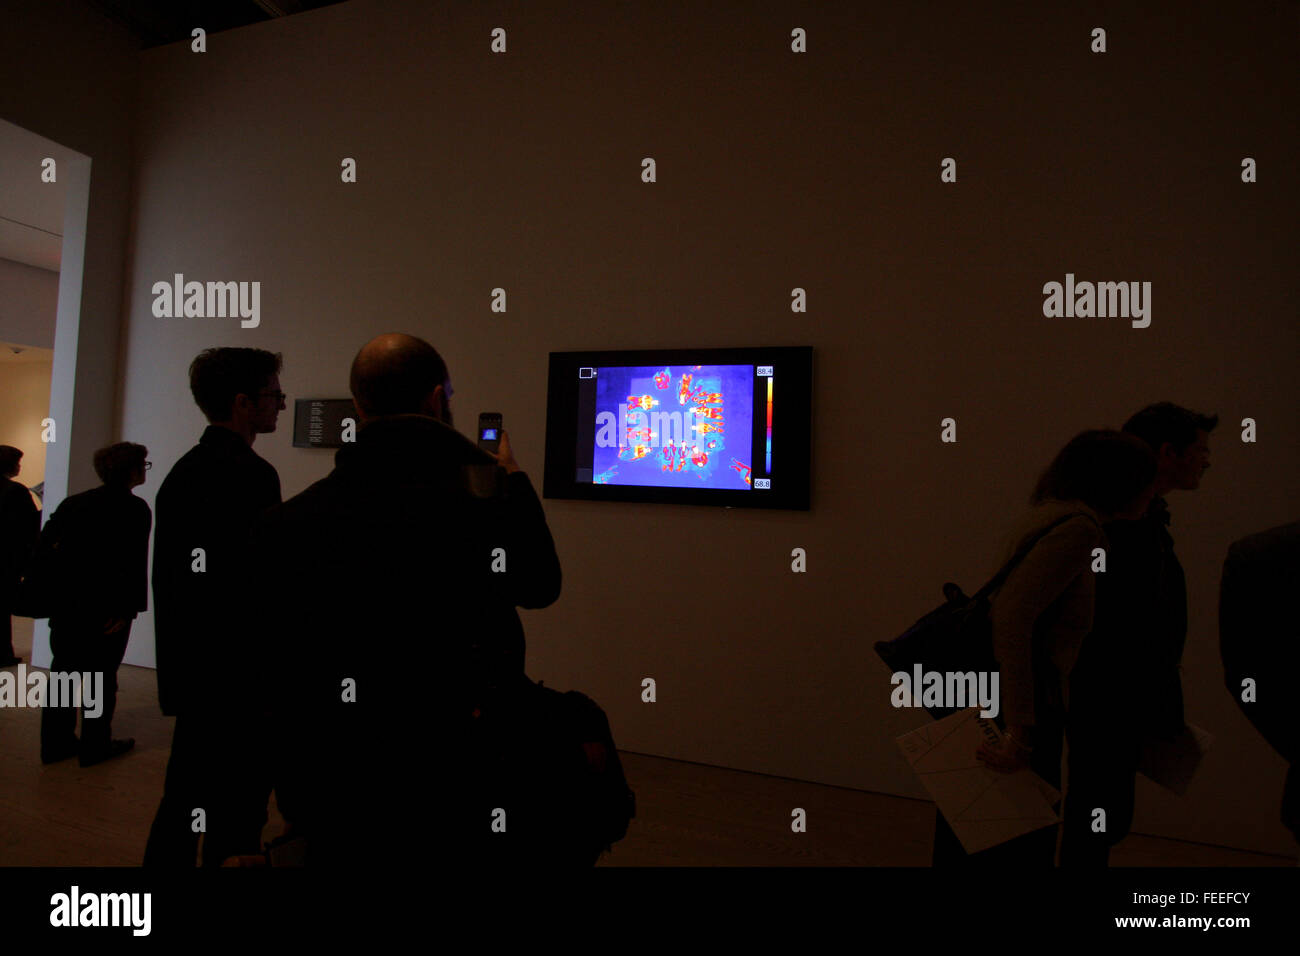 Astro rumore, il primo da solista presentano per artista Laura Poitras al Whitney Museum of American Art di New York City Foto Stock